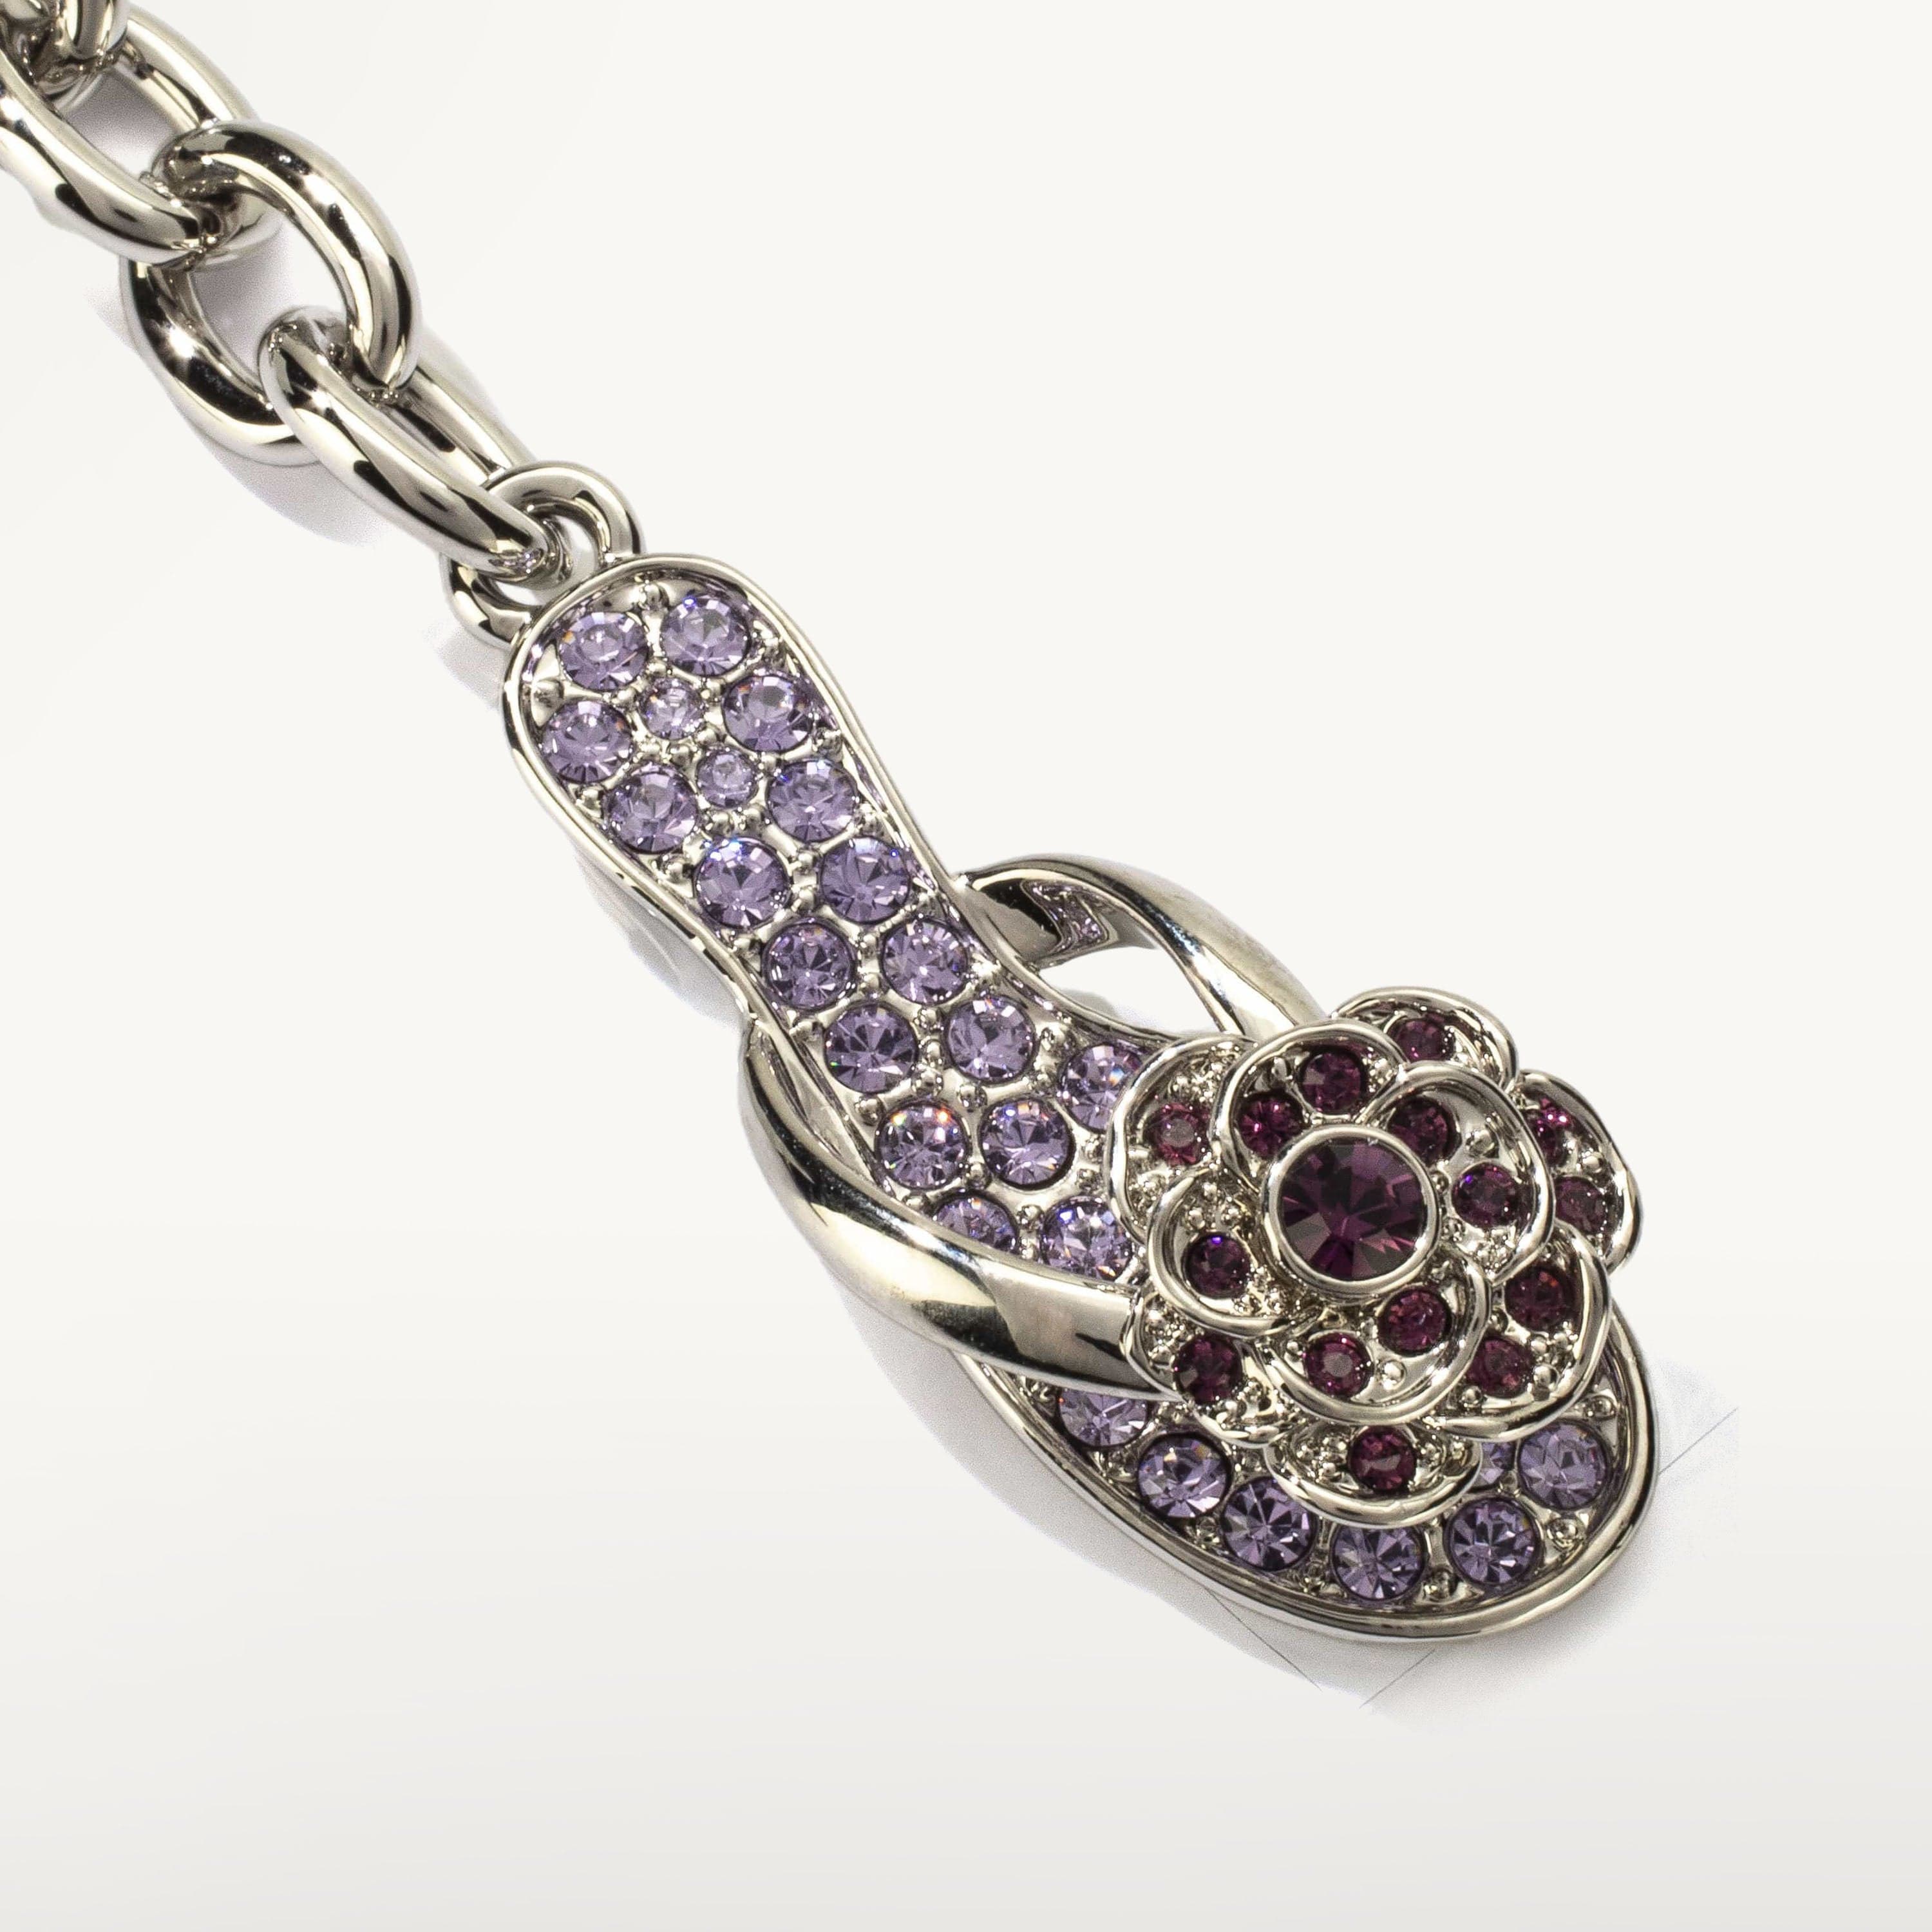 Kalifano Crystal Keychains Violet Slipper Keychain made with Swarovski Crystals SKC-096